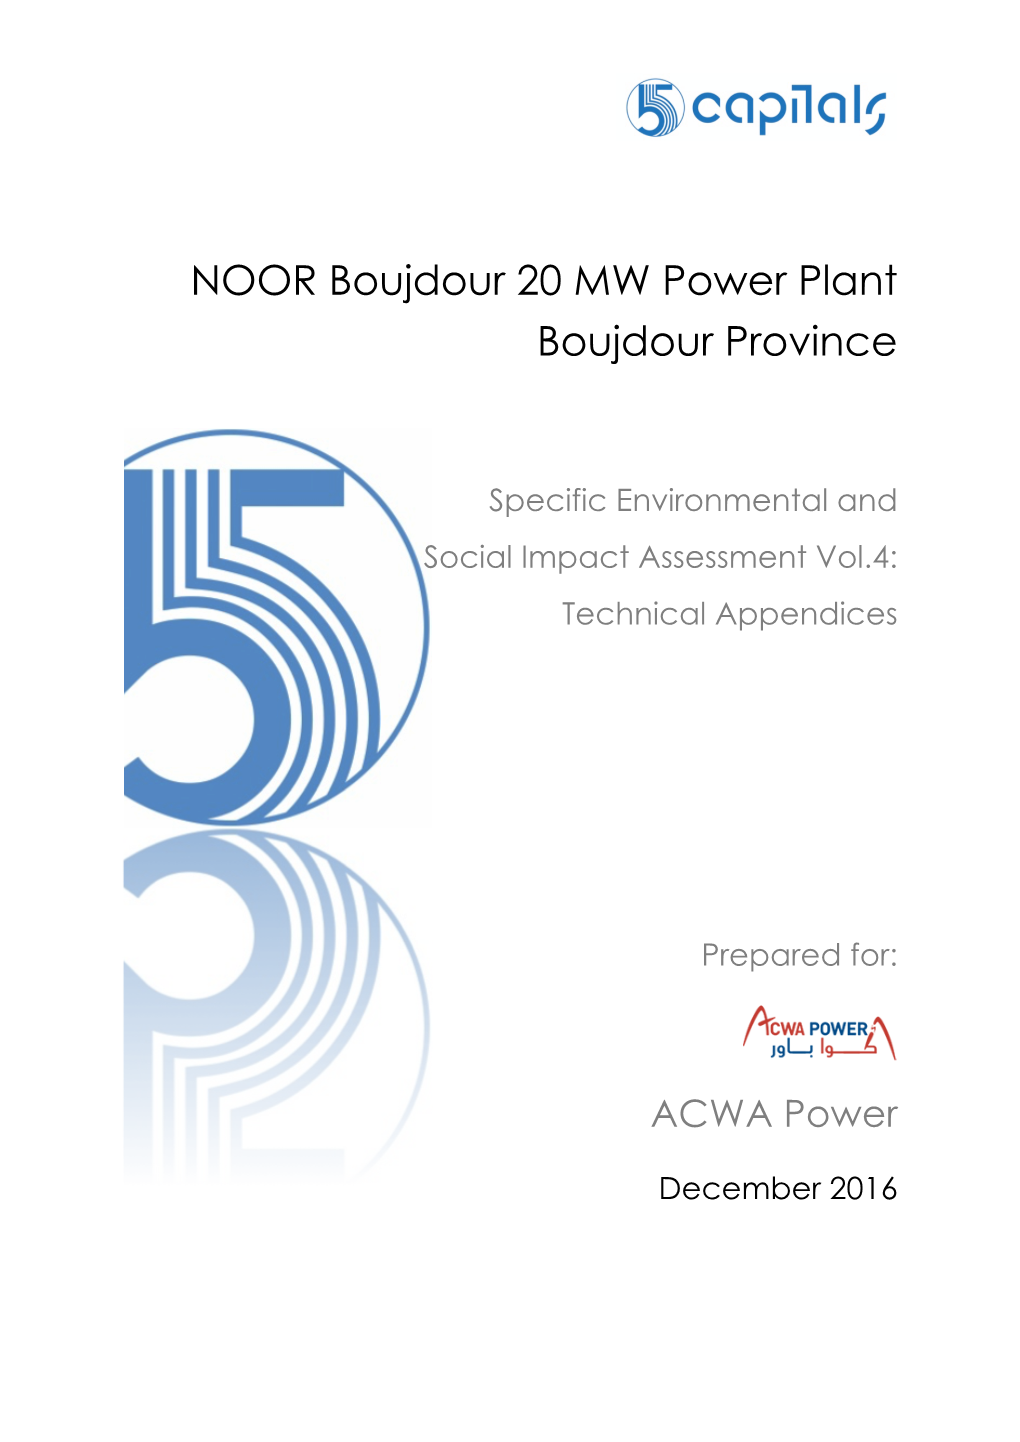 NOOR Boujdour 20 MW Power Plant Boujdour Province